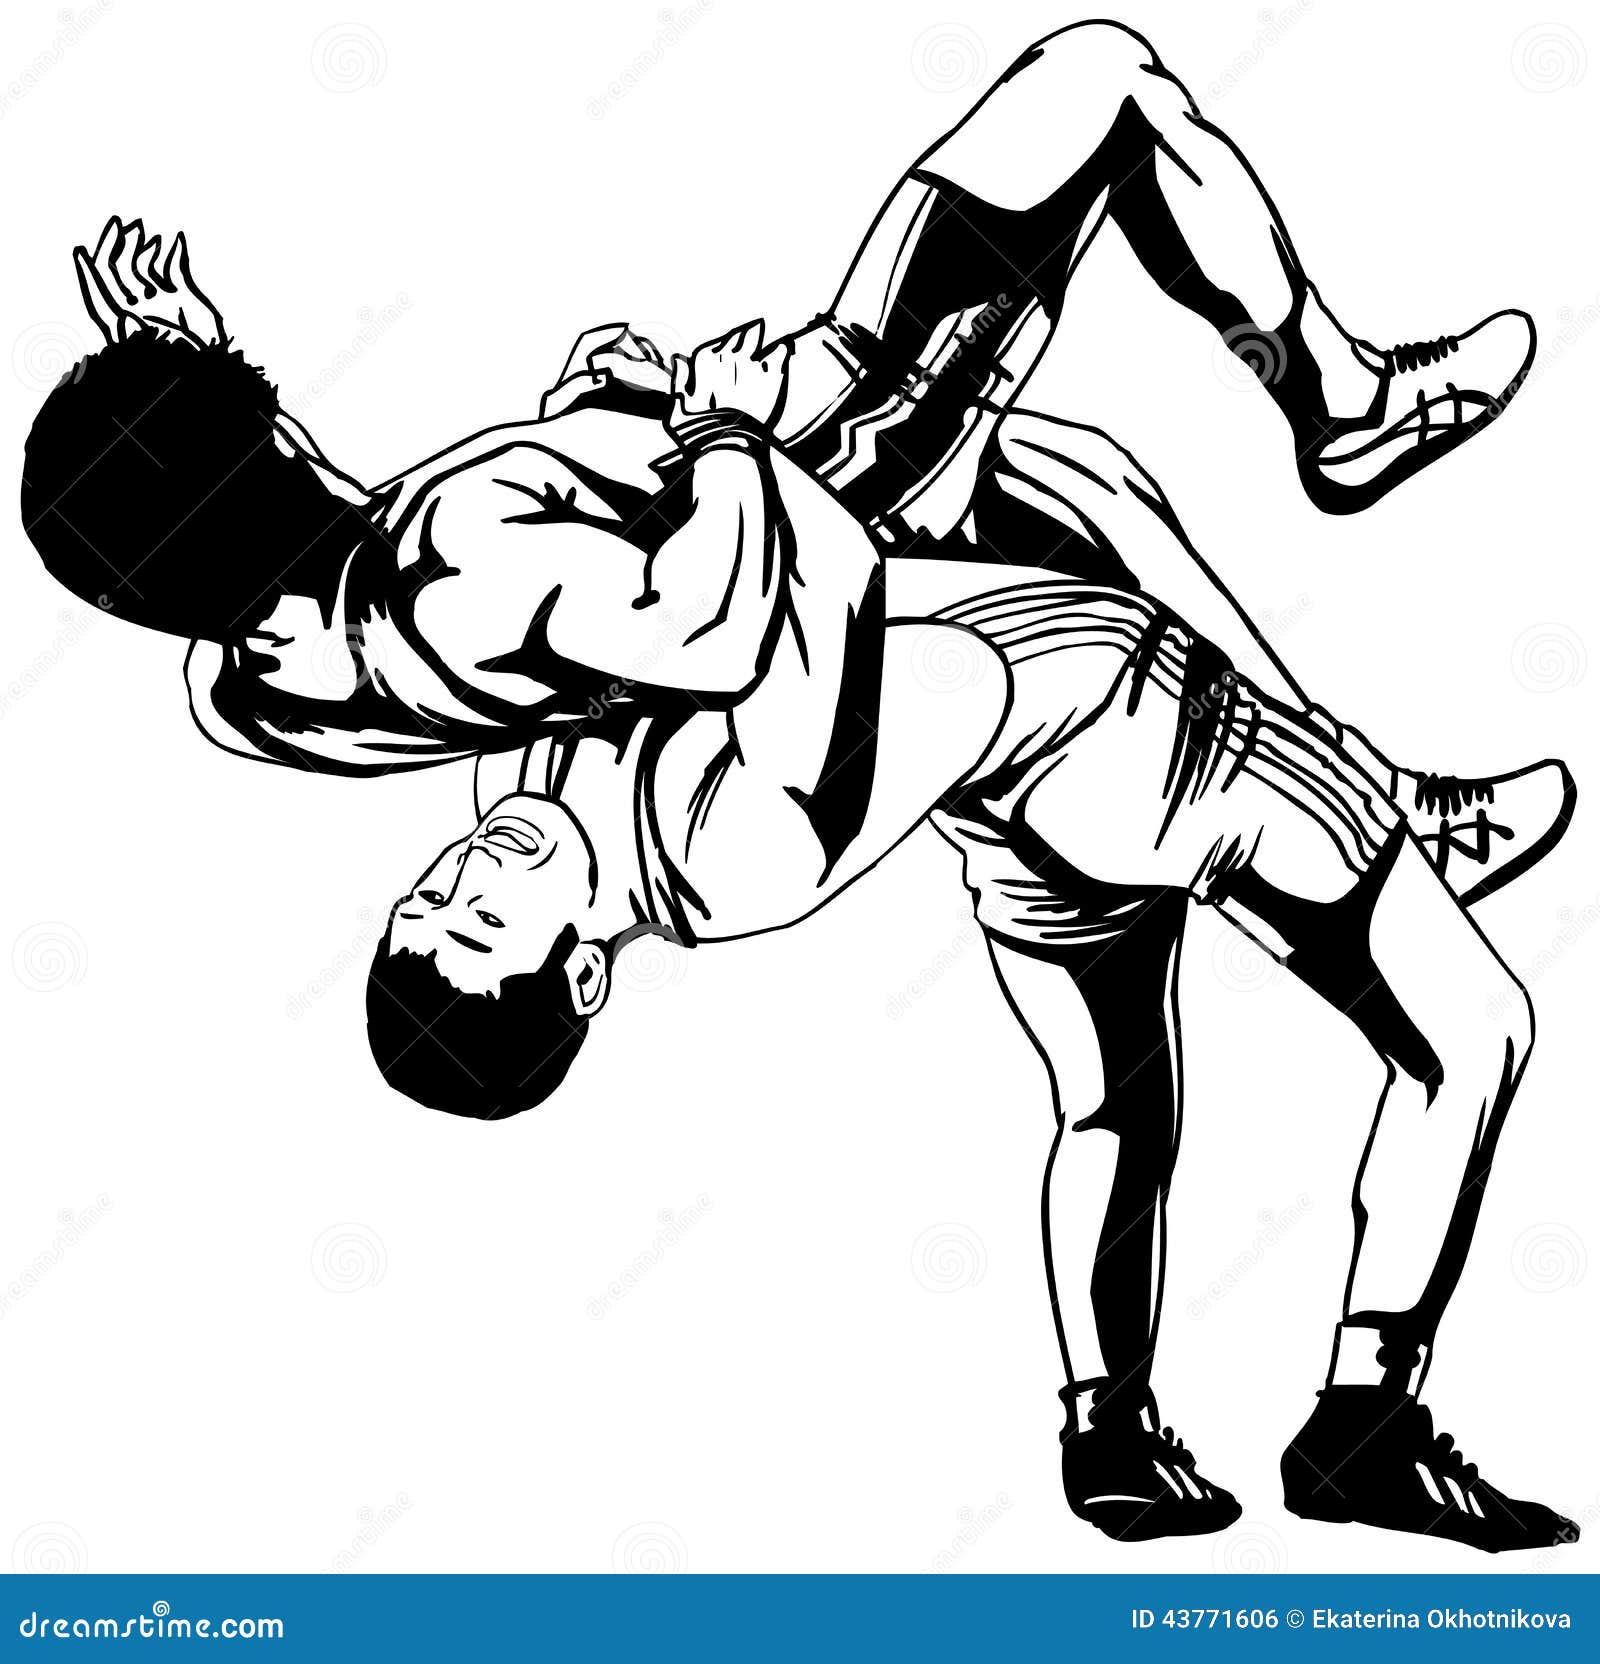 girl wrestling clipart - photo #46